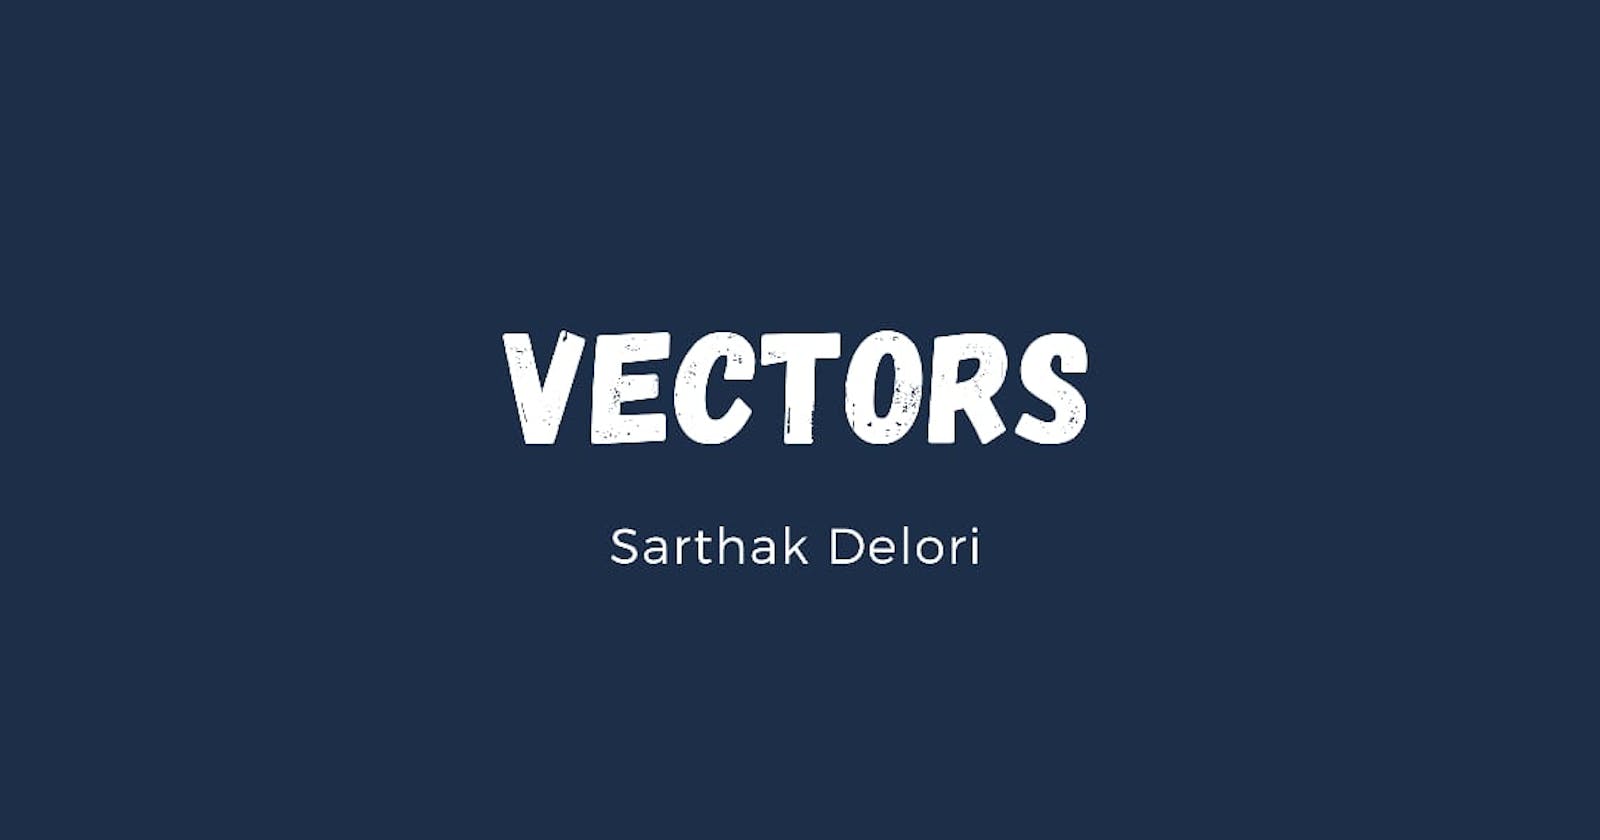 Vectors in C++